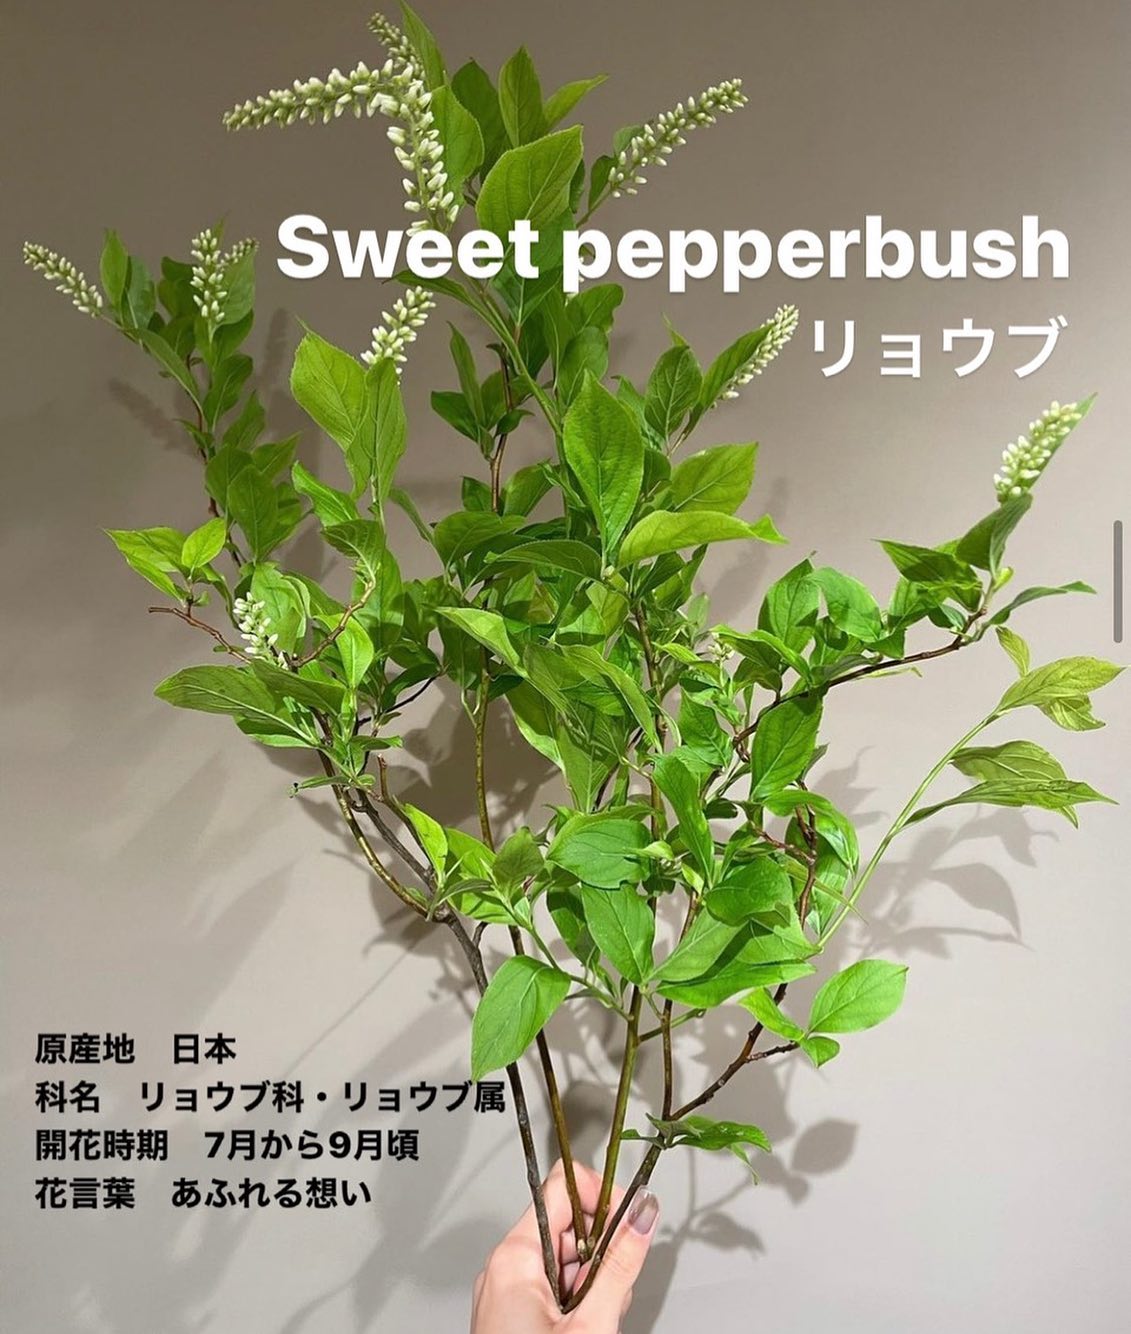 モンソーフルール新宿アルタ店です。
.

Sweet pepperbush
リョウブ

原産地　日本
科名　リョウブ科・リョウブ属
開花時期　7月から9月頃
花言葉　あふれる想い